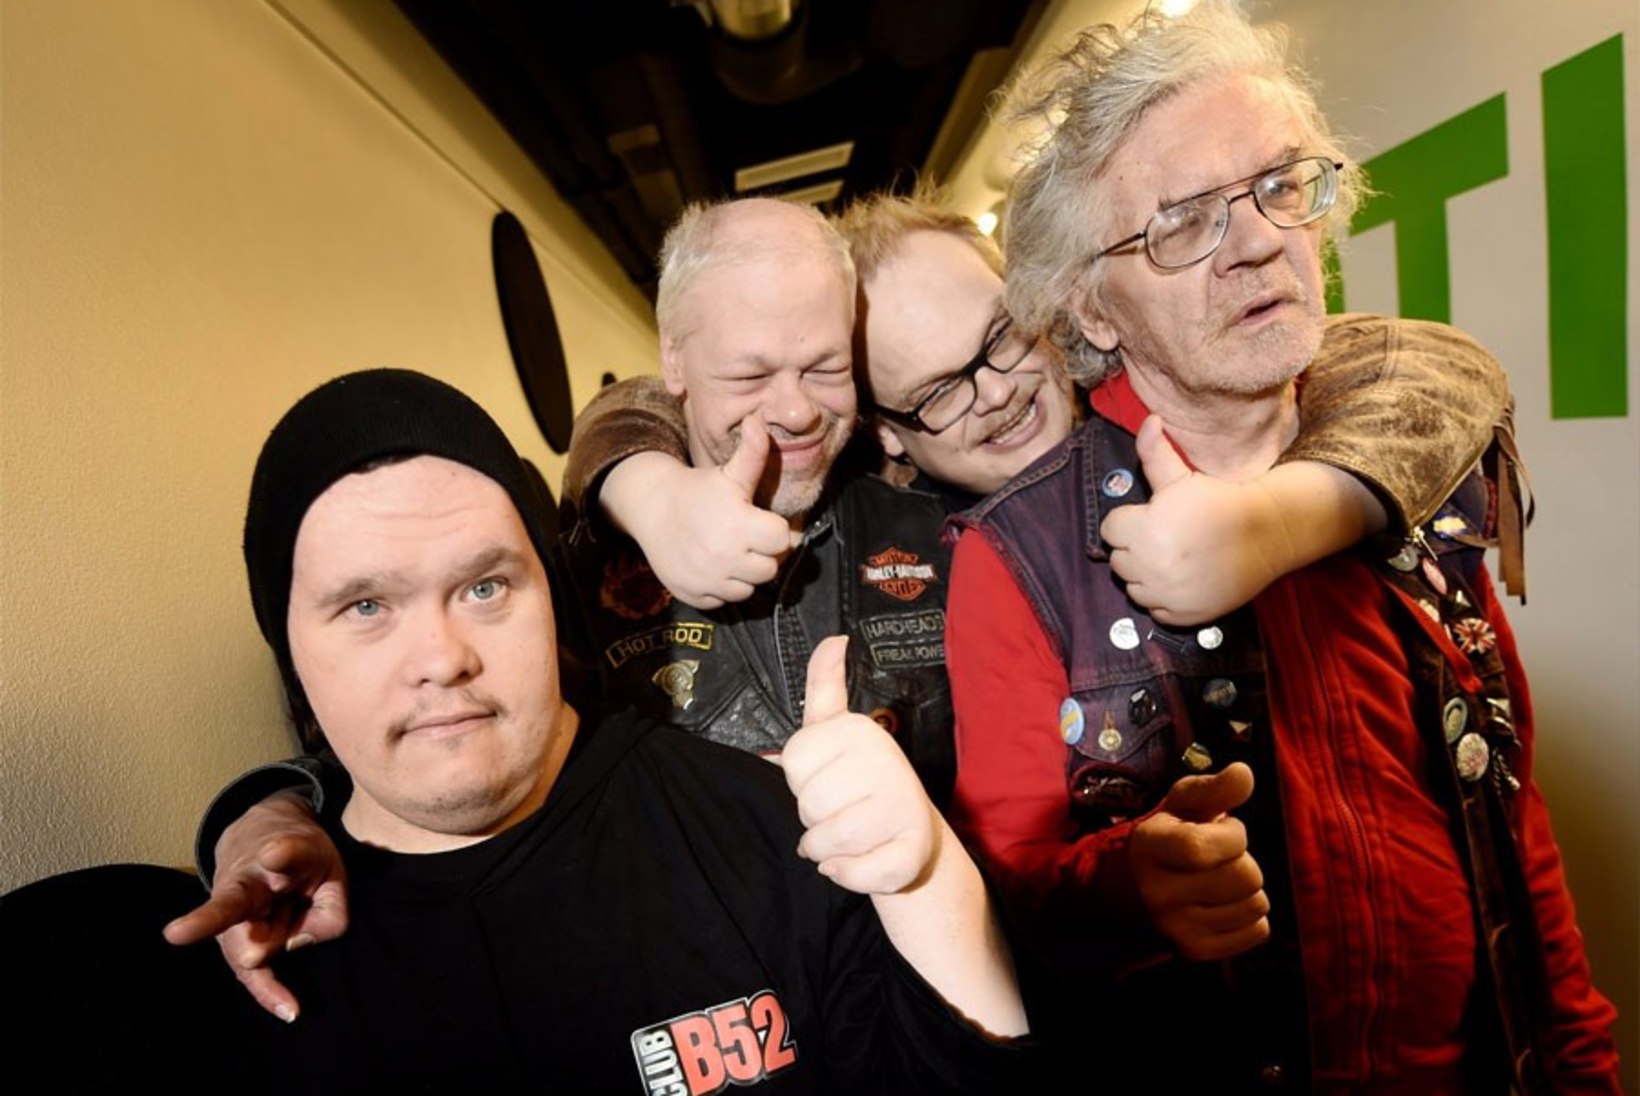 Soome punkbänd Pertti Kurikan Nimipäivät tegi kondoomilaulu